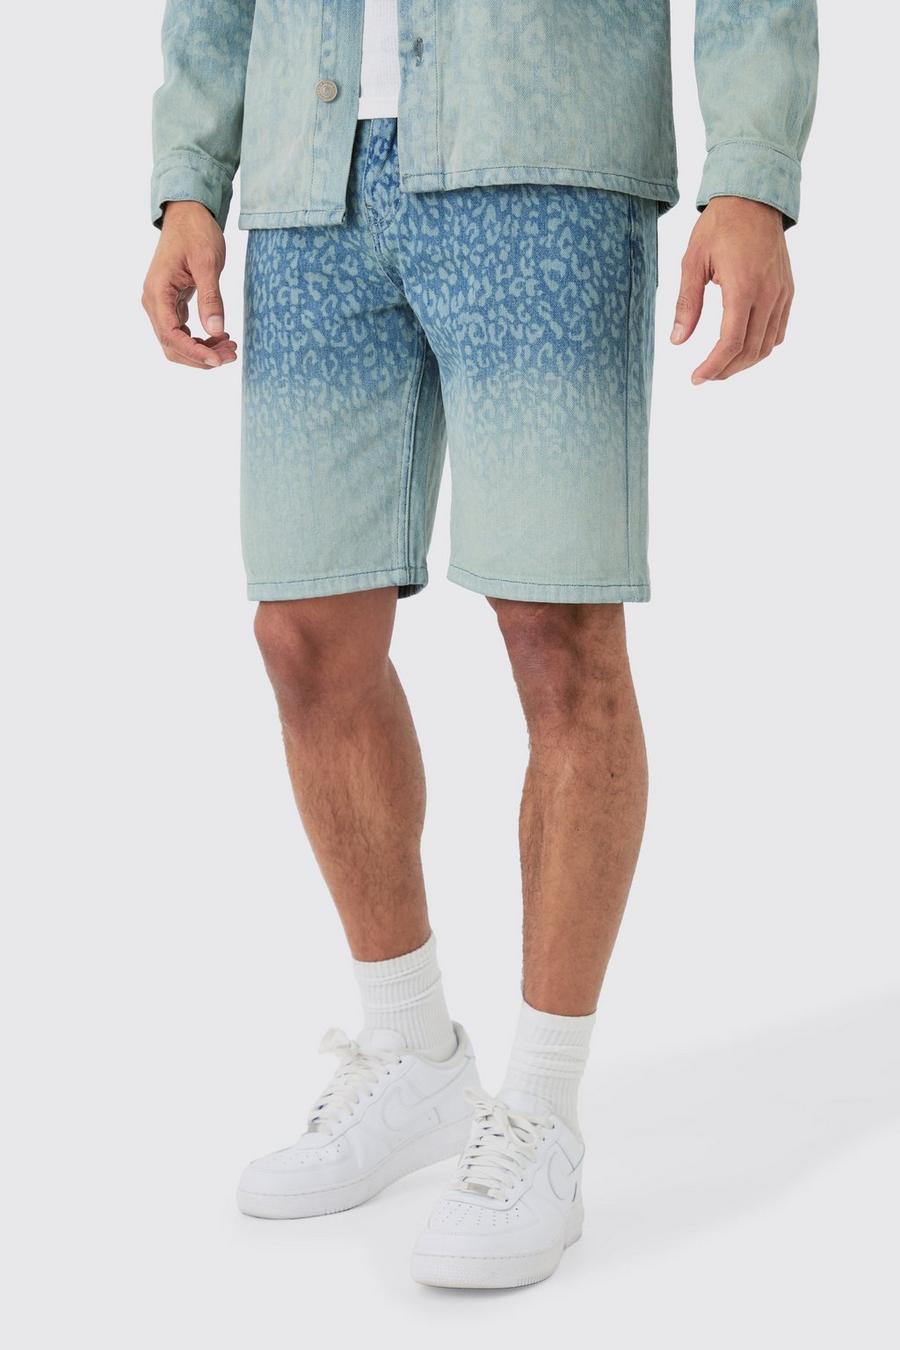 Pantalones cortos vaqueros holgados sin tratar con estampado de leopardo en azul claro, Light blue image number 1